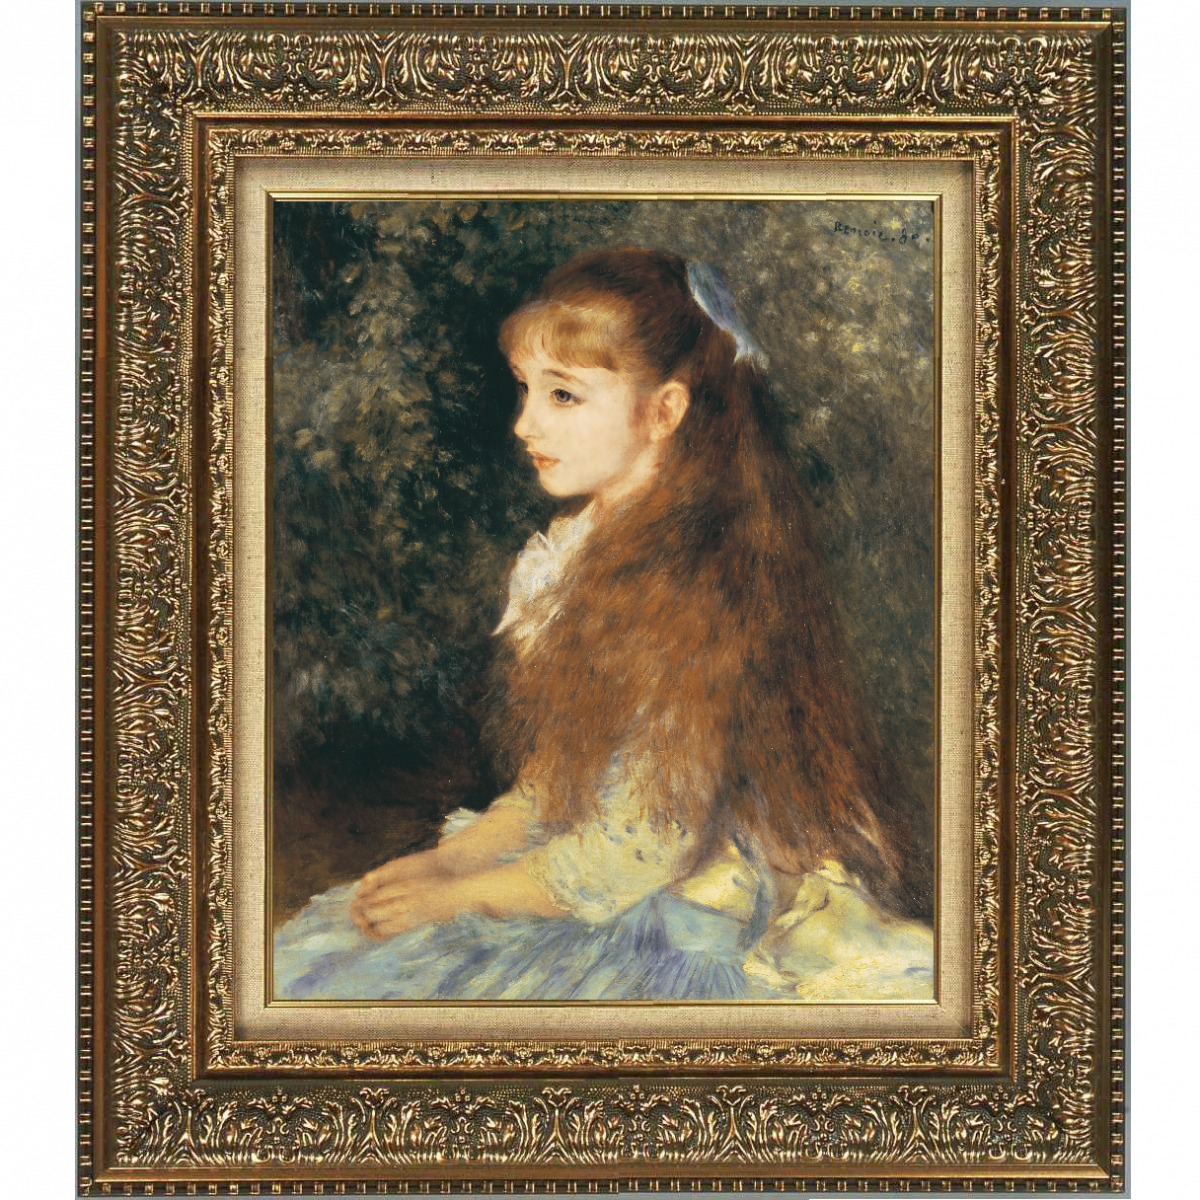 プリハード複製画／ピエール・オーギュスト・ルノワール「イレーヌ・カーン・ダンヴェルス嬢の肖像」